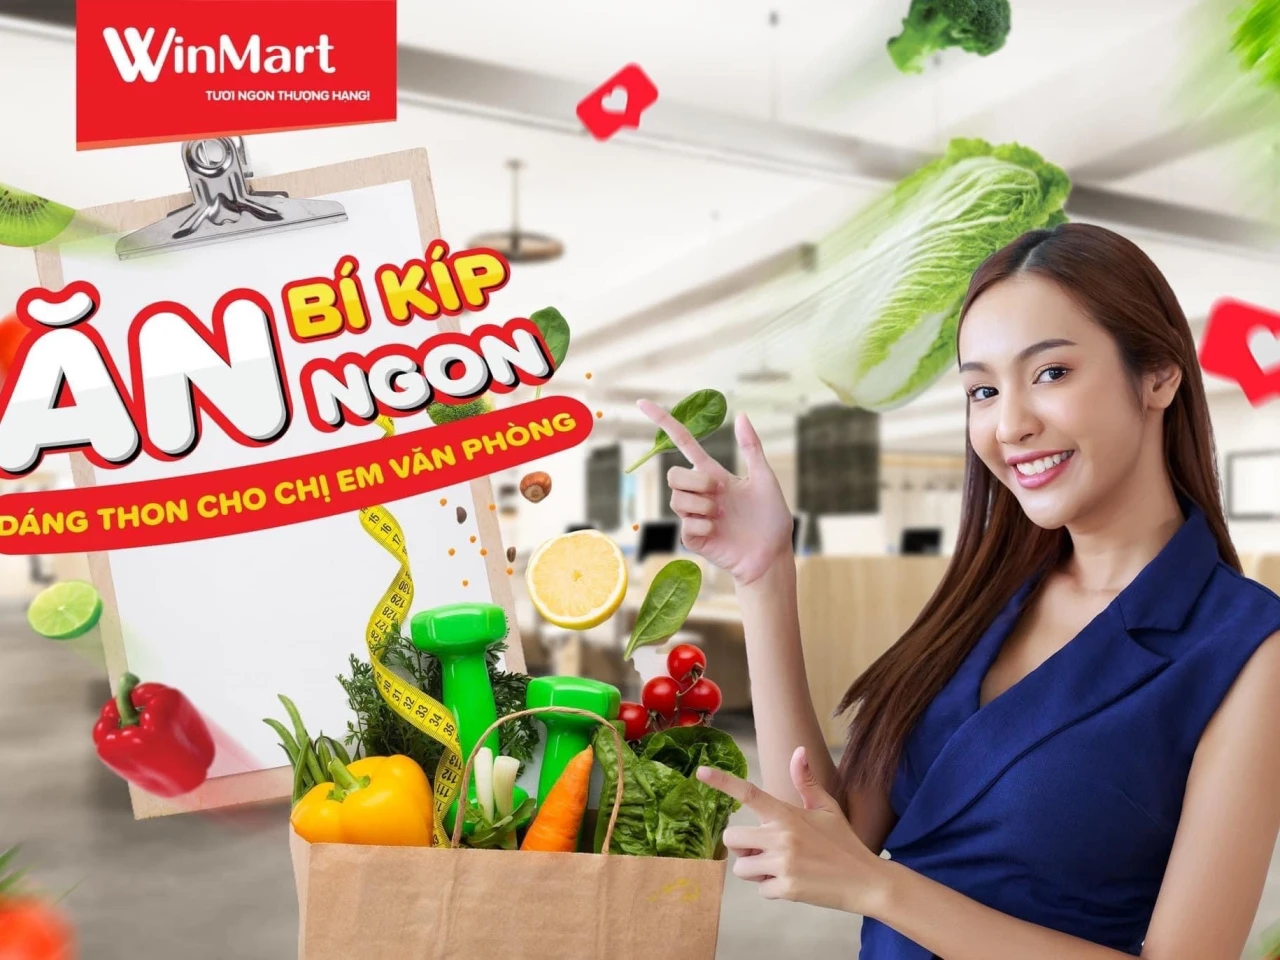 Winmart: Bí kíp ăn ngon dáng thon cho chị em văn phòng